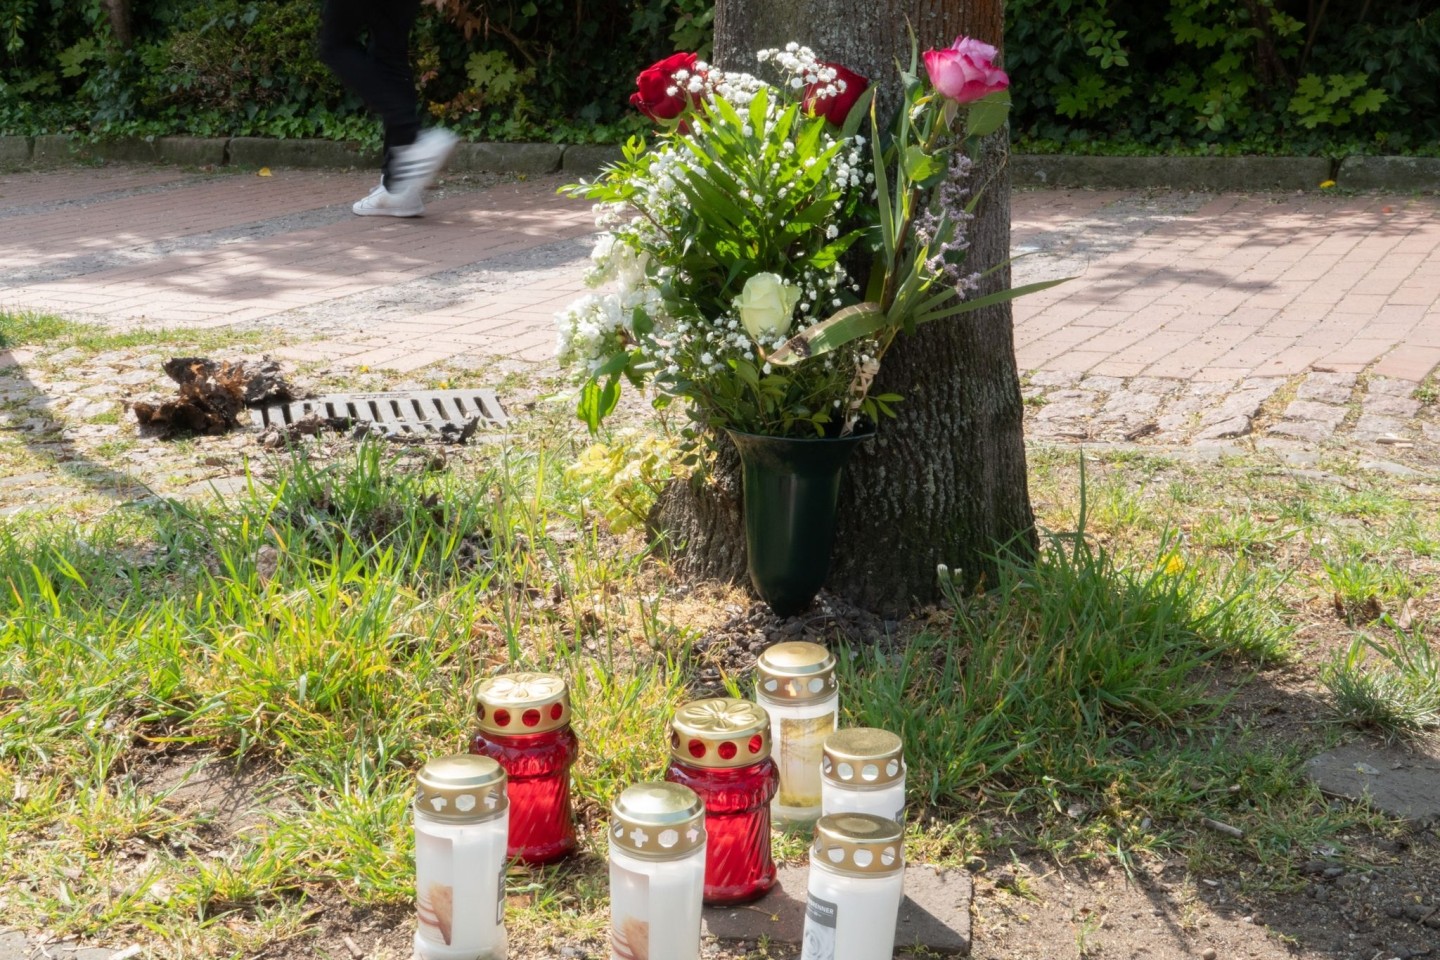 Blumen und Kerzen am Tatort in der Innenstadt von Burgdorf bei Hannover. Nach tödlichen Stichen auf eine 35-jährige Frau vermuten Ermittler eine bevorstende Trennung.